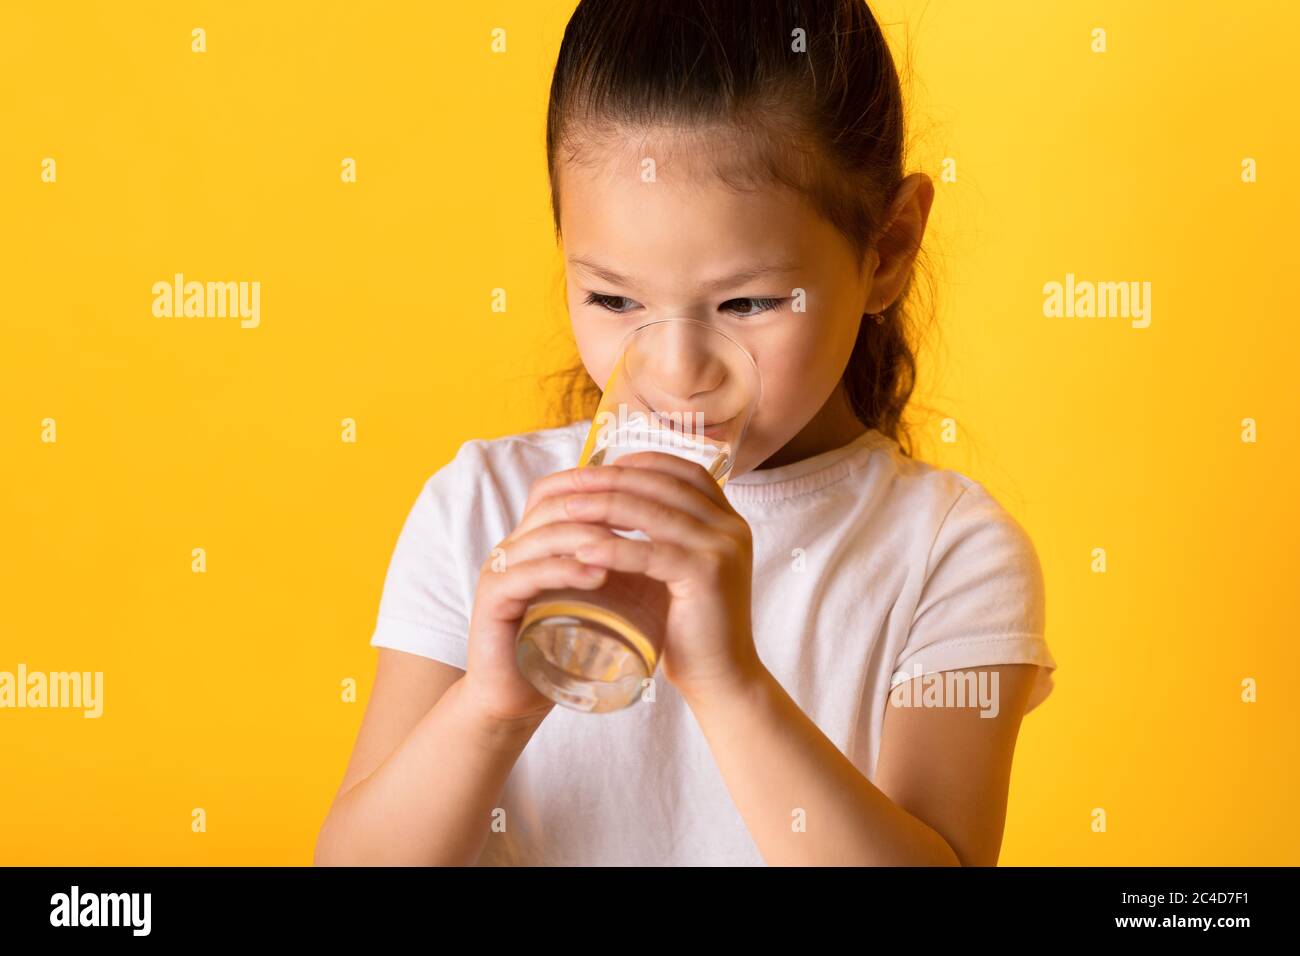 Portrait d'un enfant asiatique joyeux qui boit de l'eau douce Banque D'Images